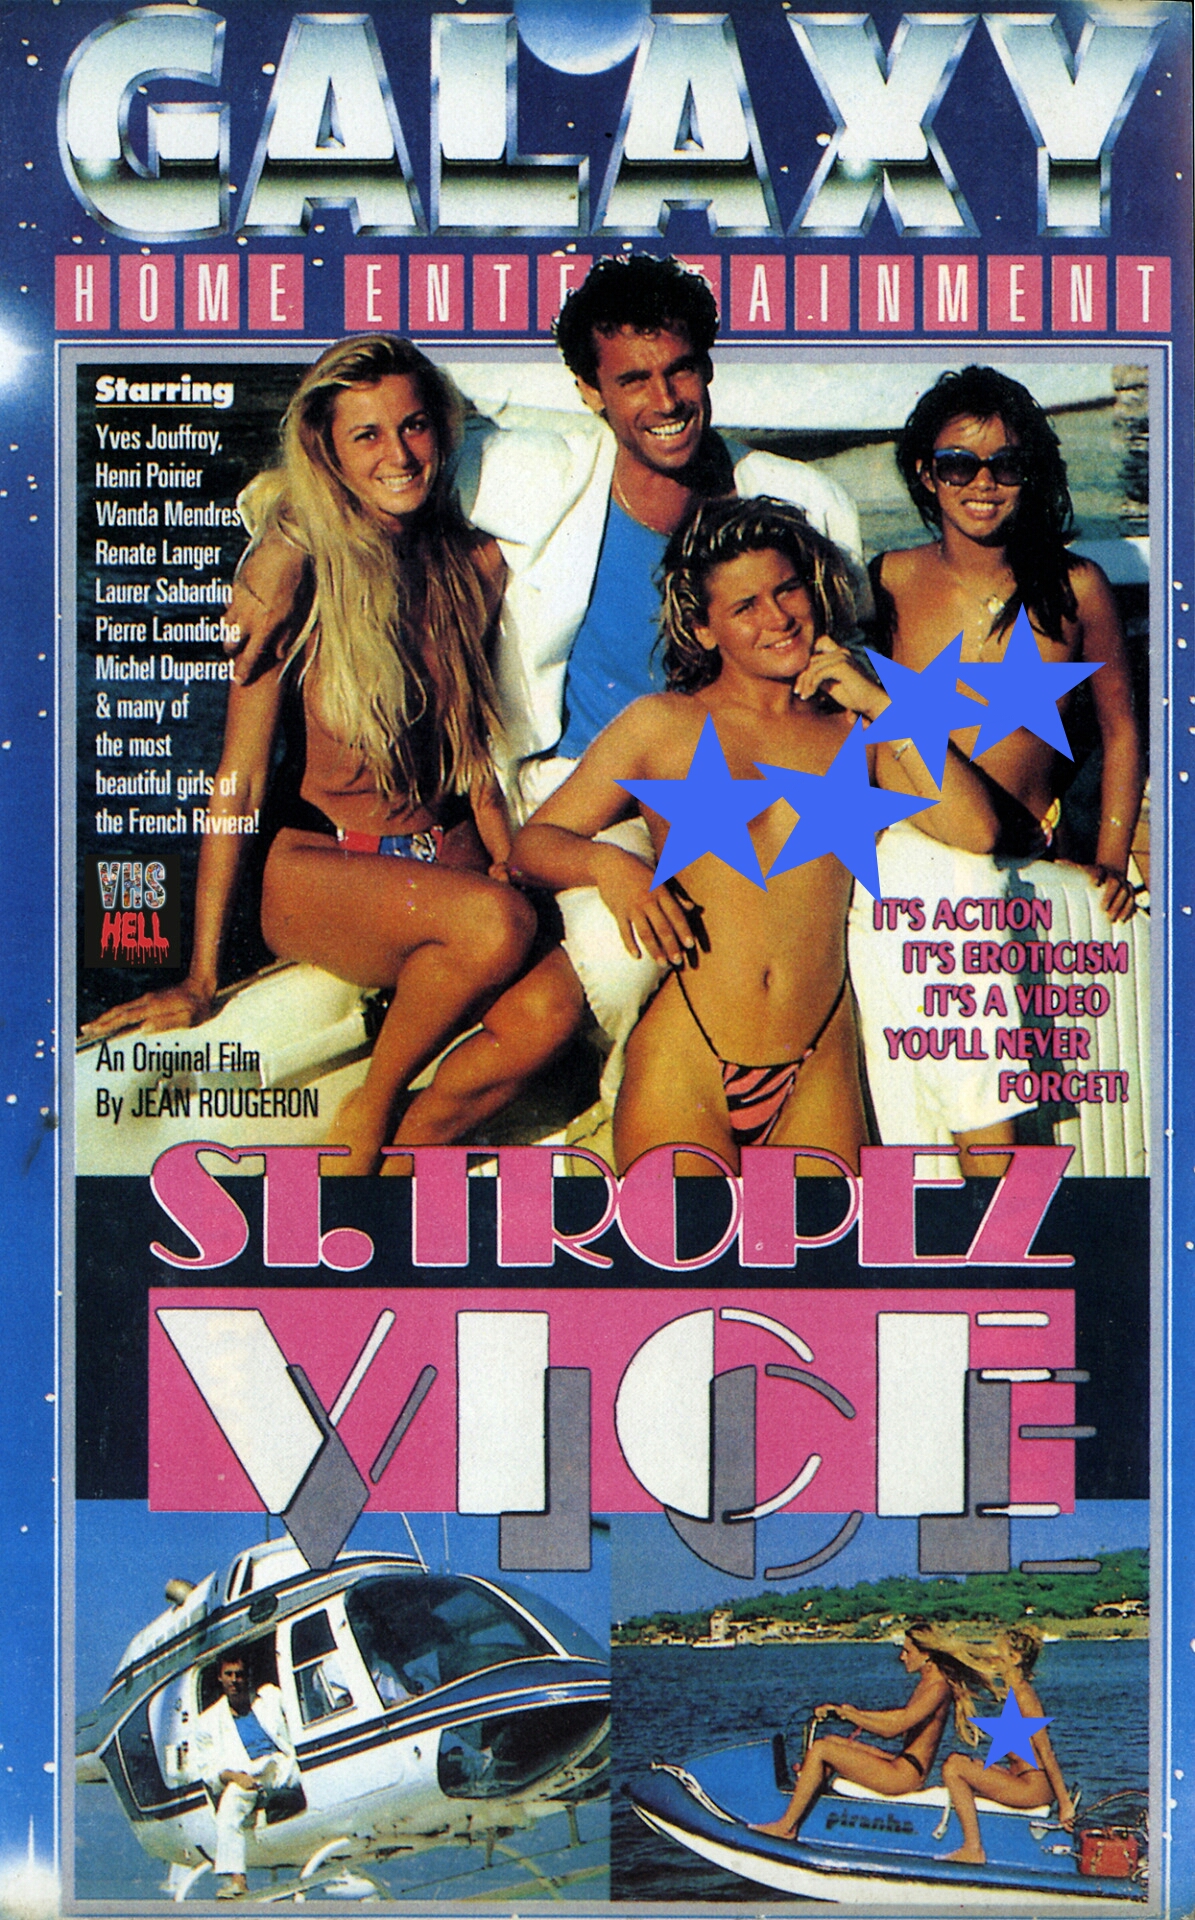 Police des moeurs: Les filles de Saint Tropez (1987) Screenshot 3 